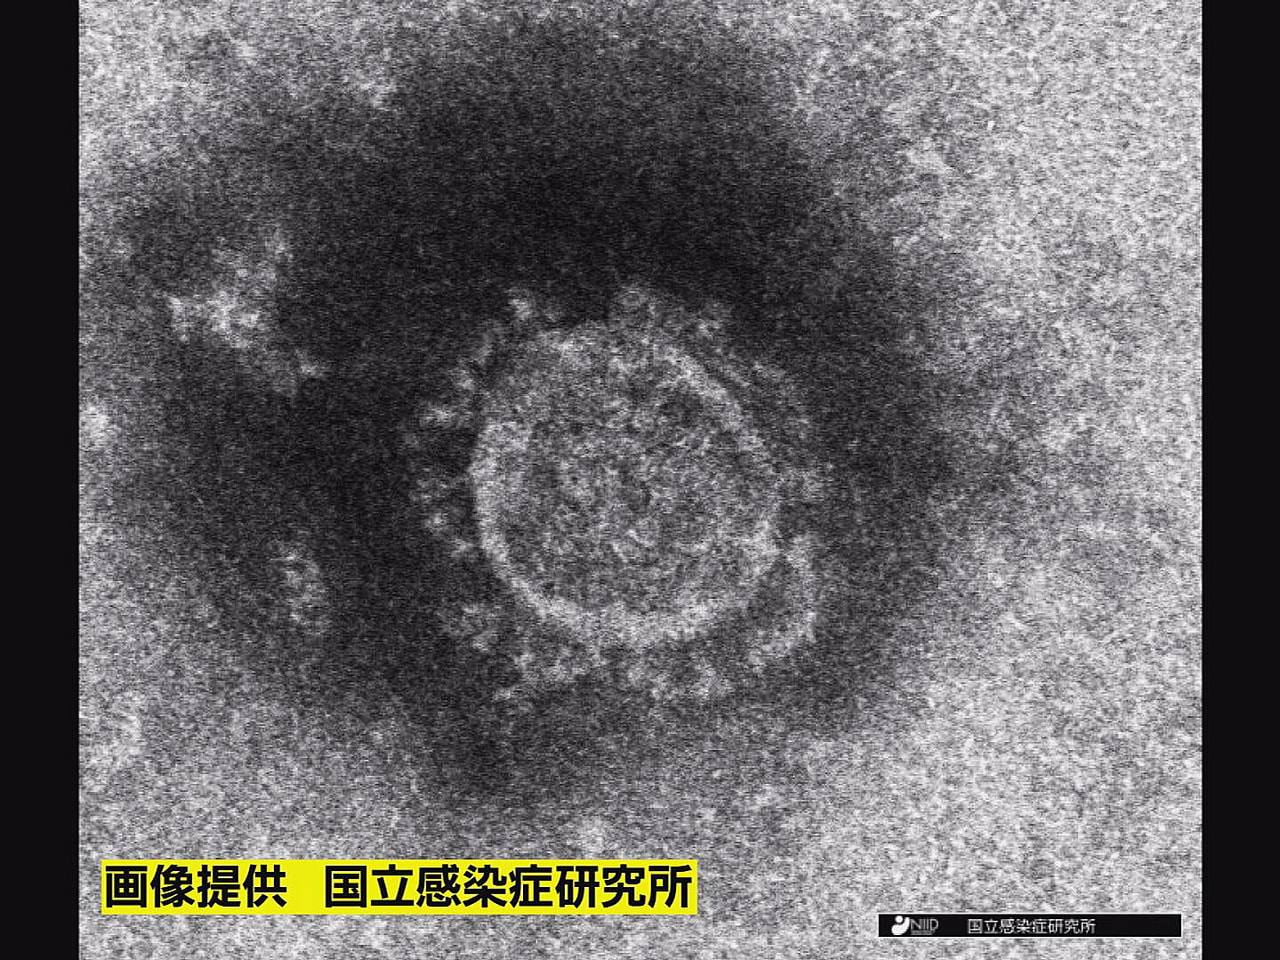 岐阜県は２１日、県内で新型コロナウイルスの新たな感染者は確認されなかったと発表し...